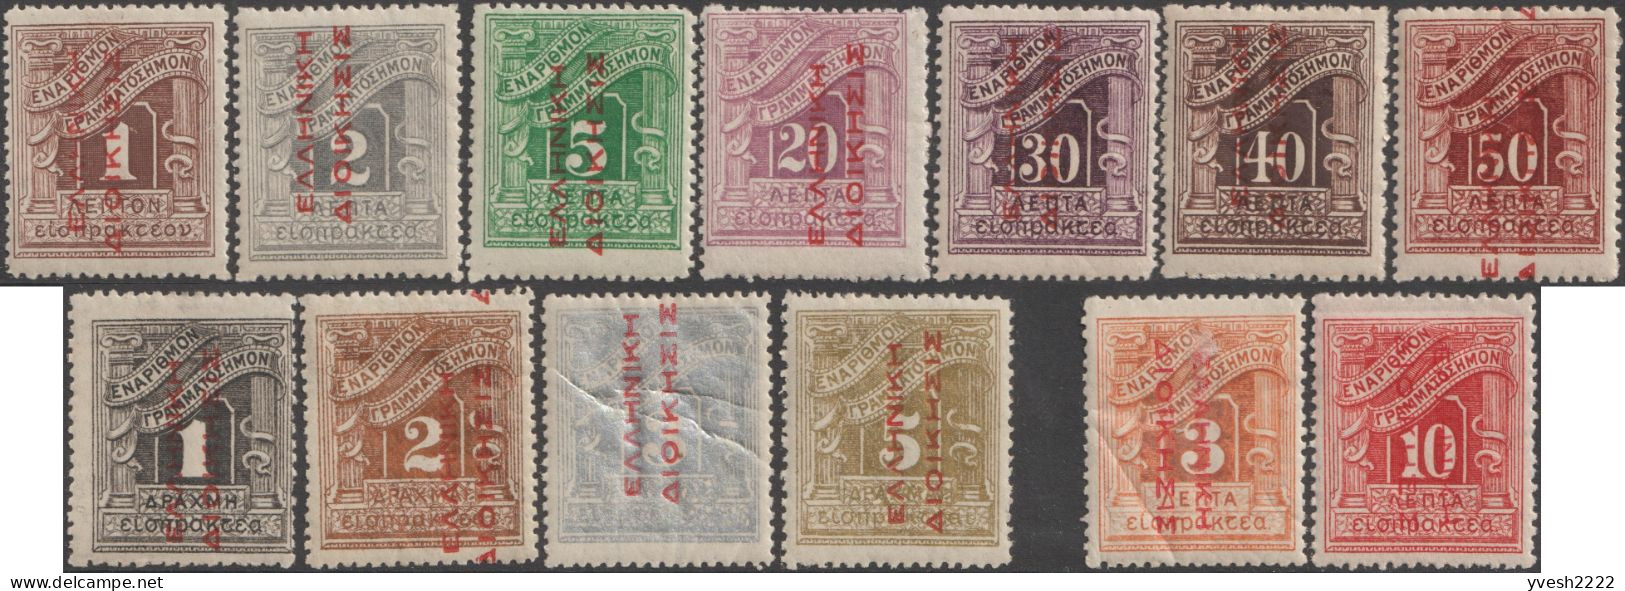 Grèce 1912 Y&T Taxe 52 à 64, Neufs Avec Charnières. Surcharges Rouges - Nuovi